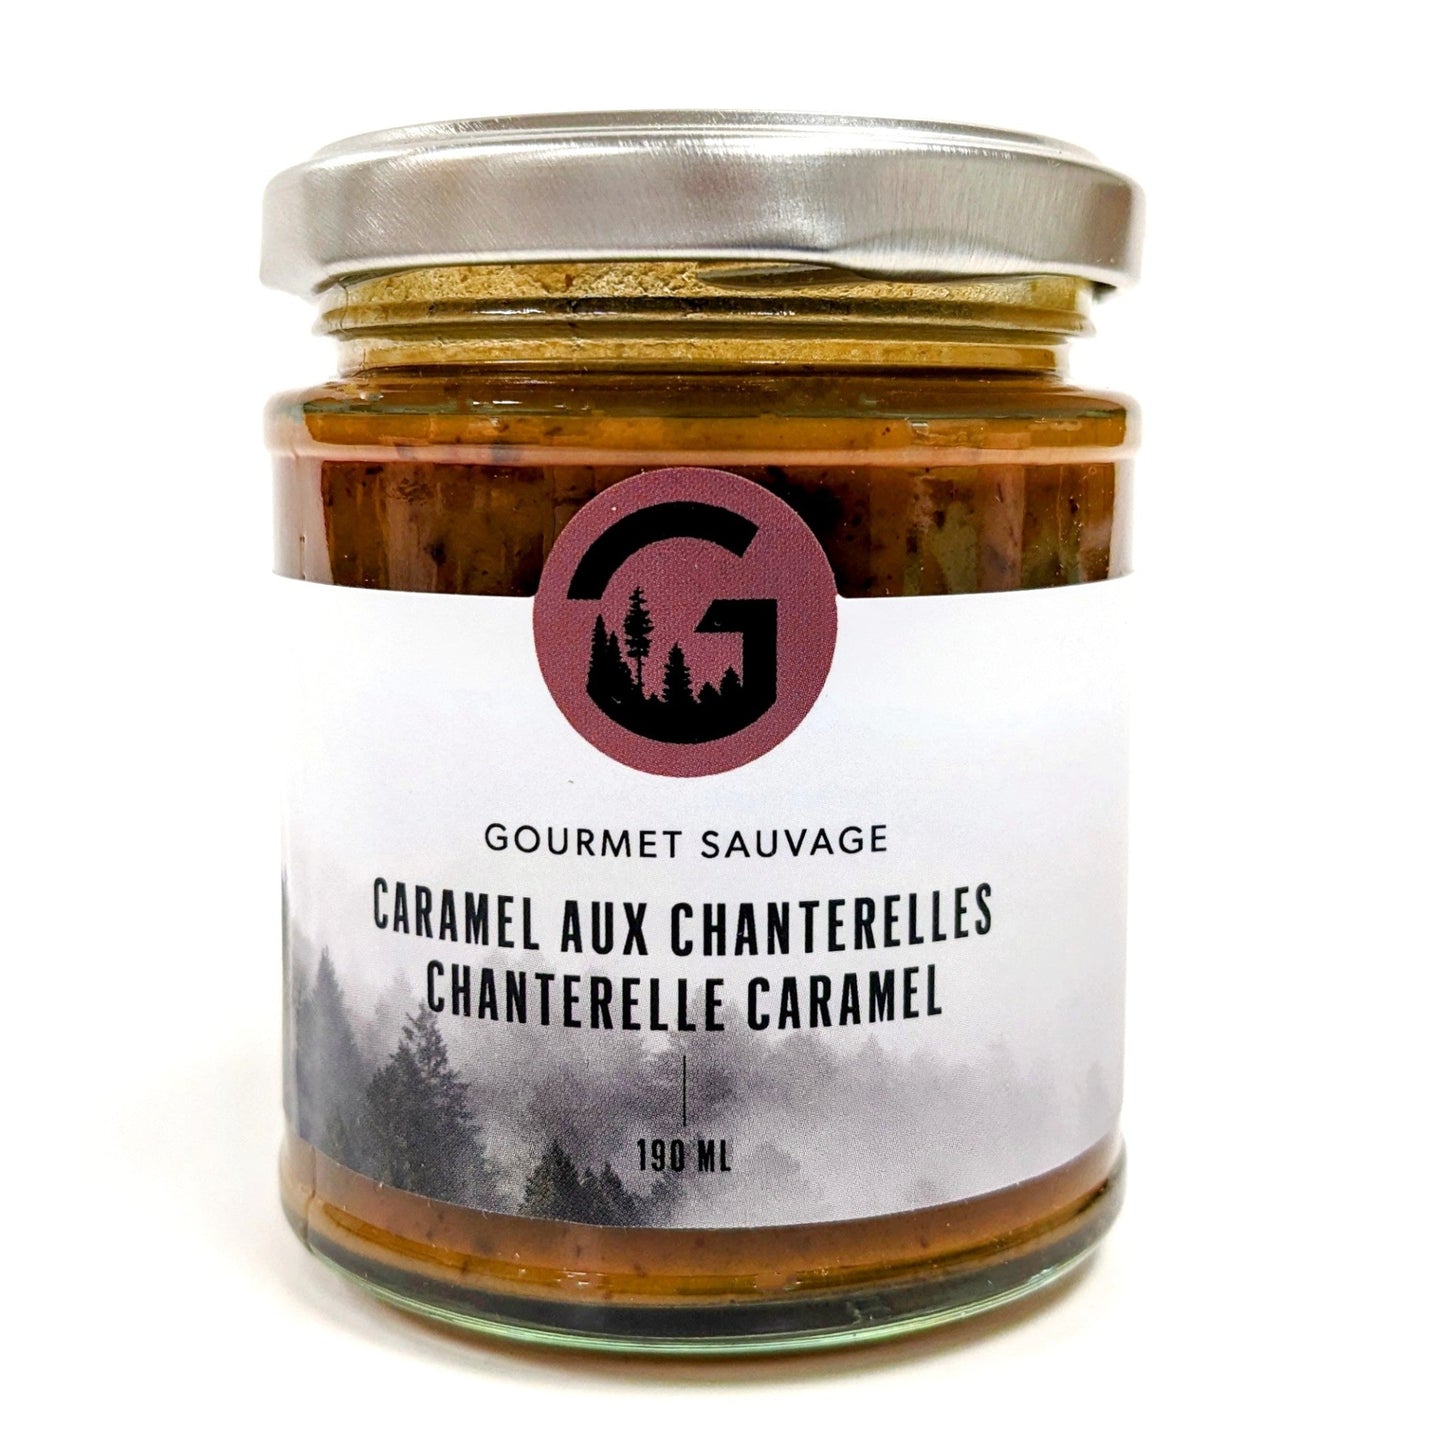 Caramel aux chanterelles - Gourmet Sauvage